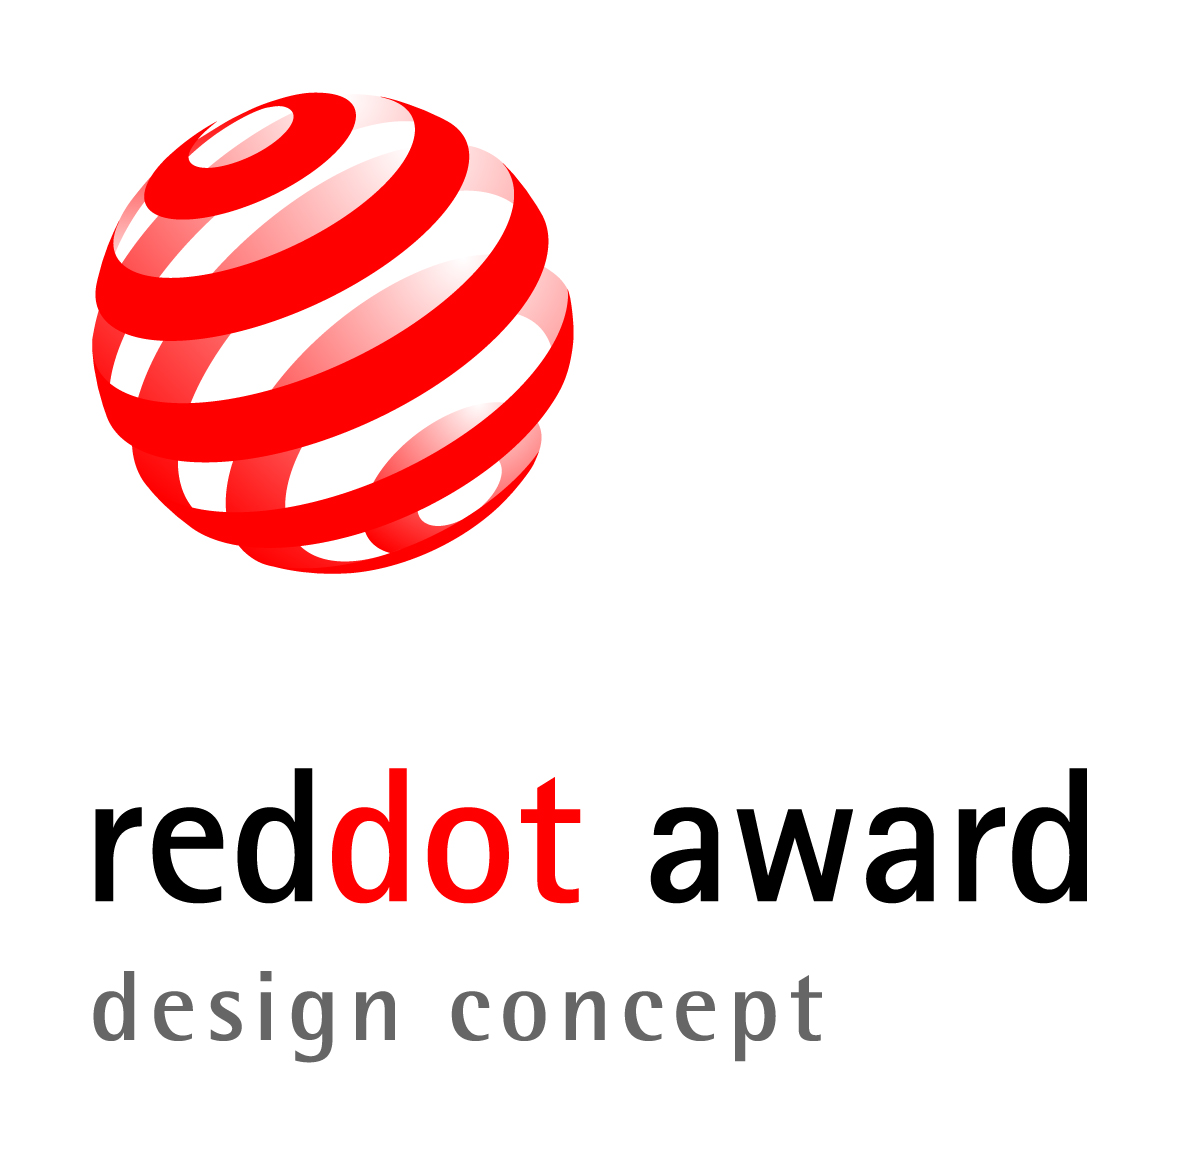 Medicin At deaktivere opdagelse Red Dot Award: Design Concept – Standard submission phase ends on 22 March